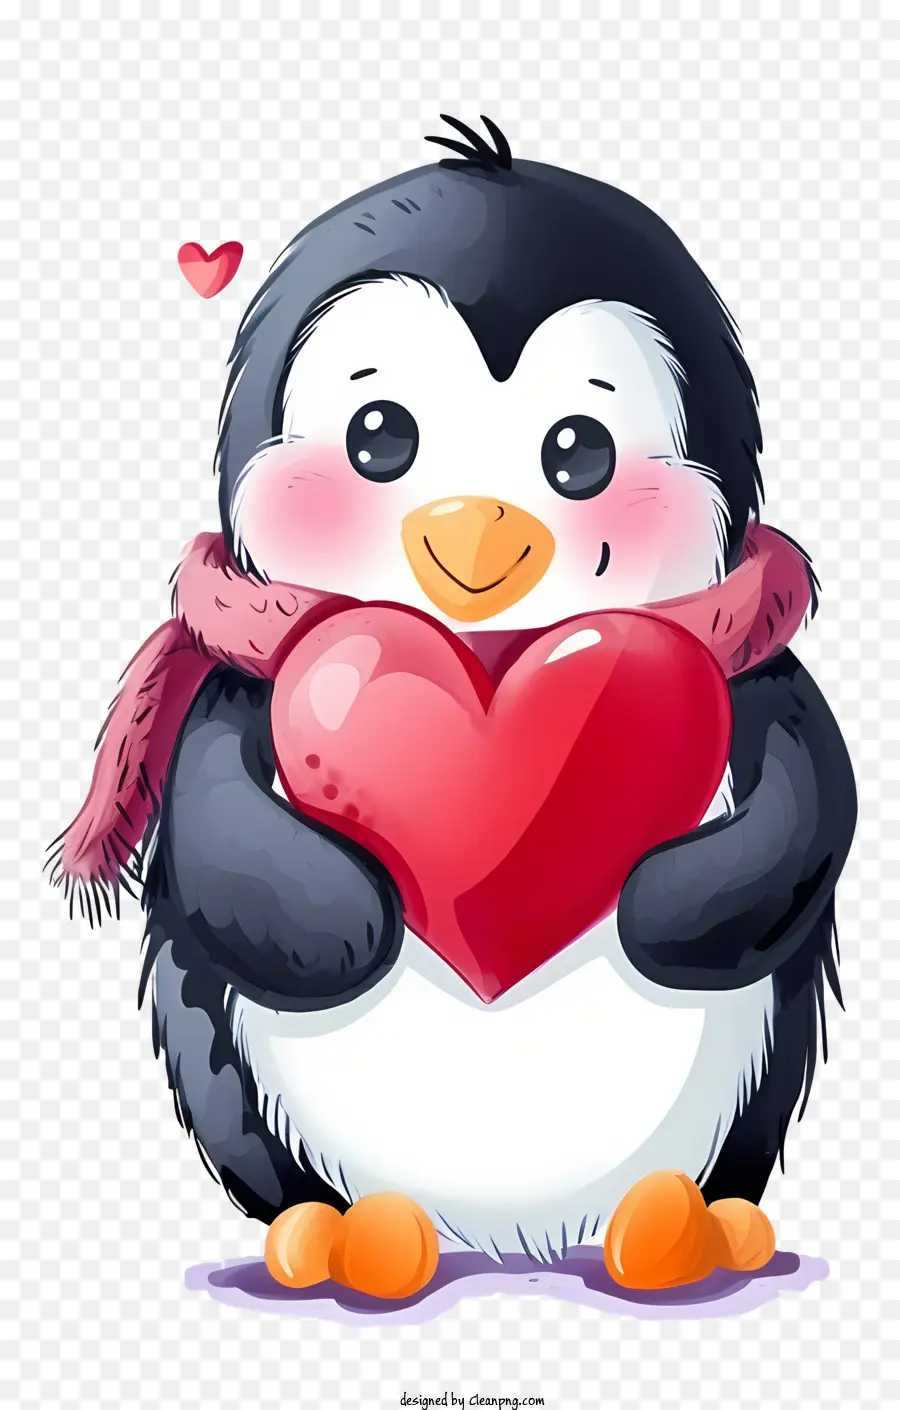 Vector vẽ nhân vật Thiết kế Valentine Chim cánh cụt dễ thương Chim cánh cụt mặc khăn quàng cổ Chim cánh cụt giữ trái tim - Một chú chim cánh cụt đang đeo khăn quàng cổ và ôm trái tim